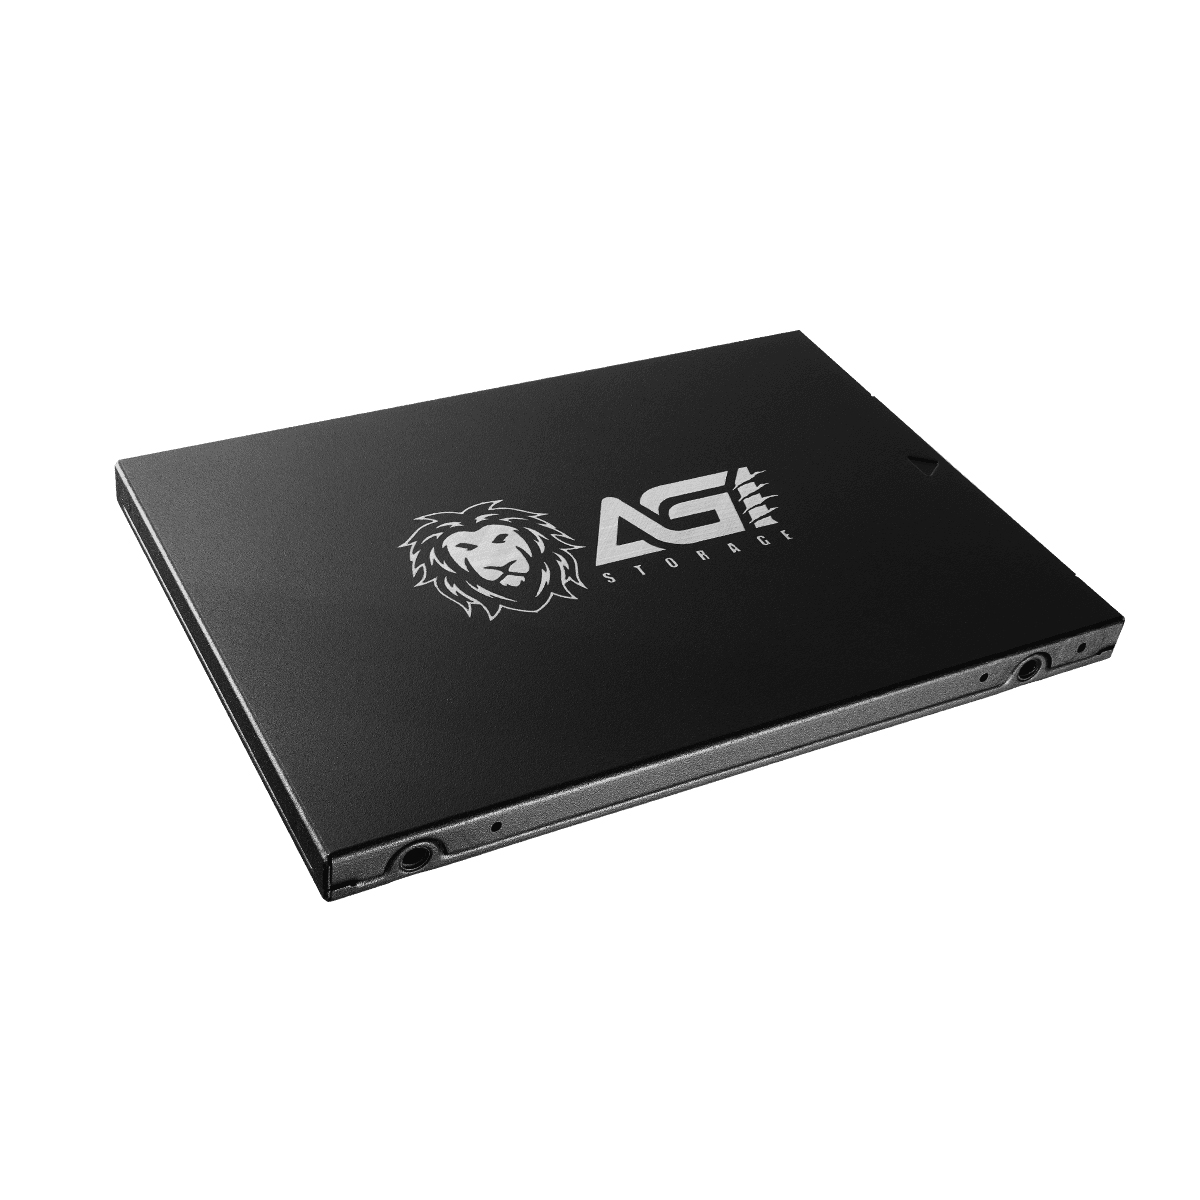 Ổ Cứng SSD AGI 512GB - AGI512G17AI178 - Hàng Chính Hãng